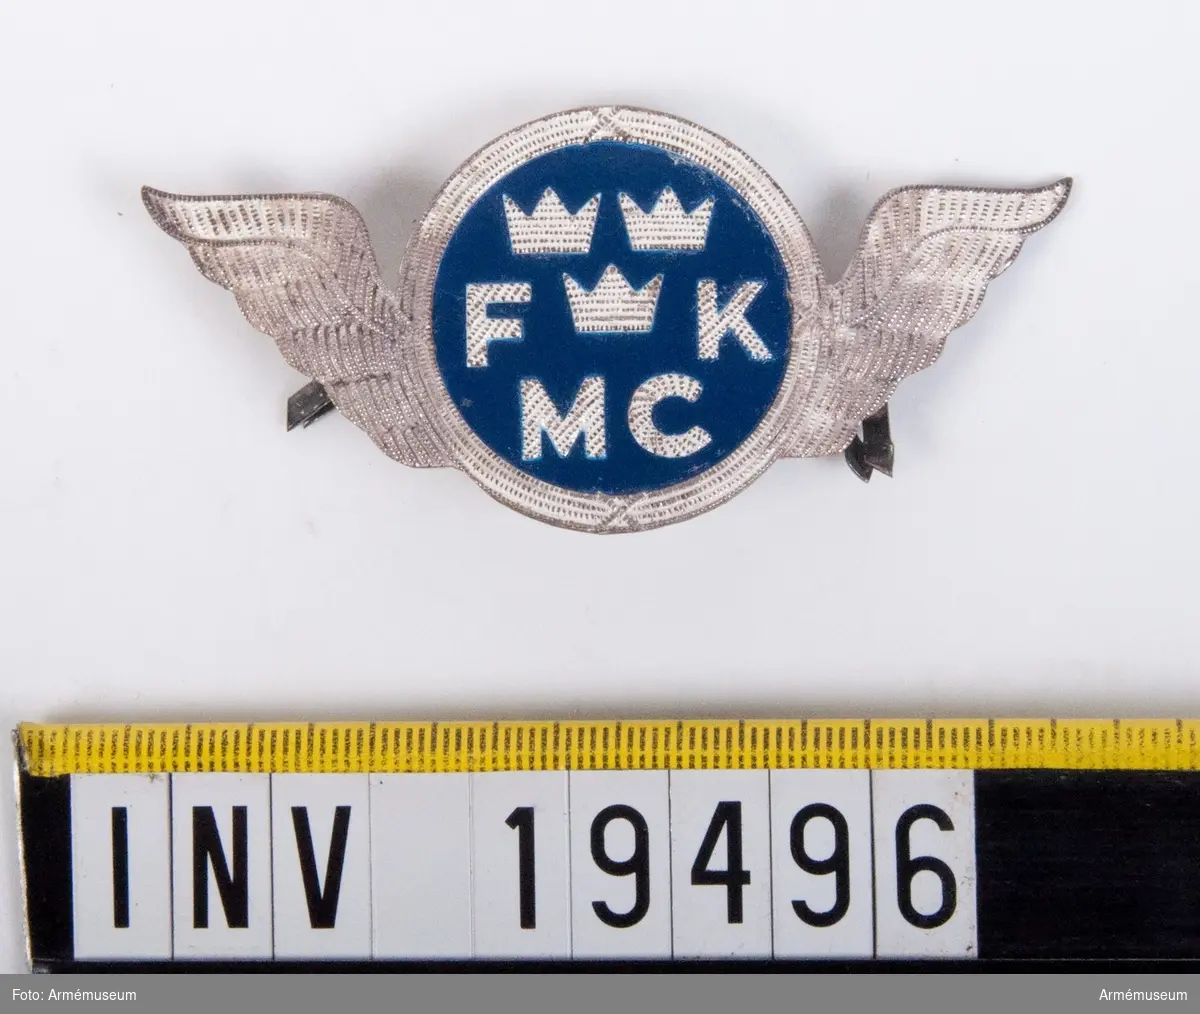 Tillverkat i aluminium. I mitten en blåmålad rundel varifrån två vingar utgår. I mitten trekronorsmärket och bokstäverna FK och MC finns på sidan om trekronorsmärket och nedanför. På baksidan finns en fästanordning.